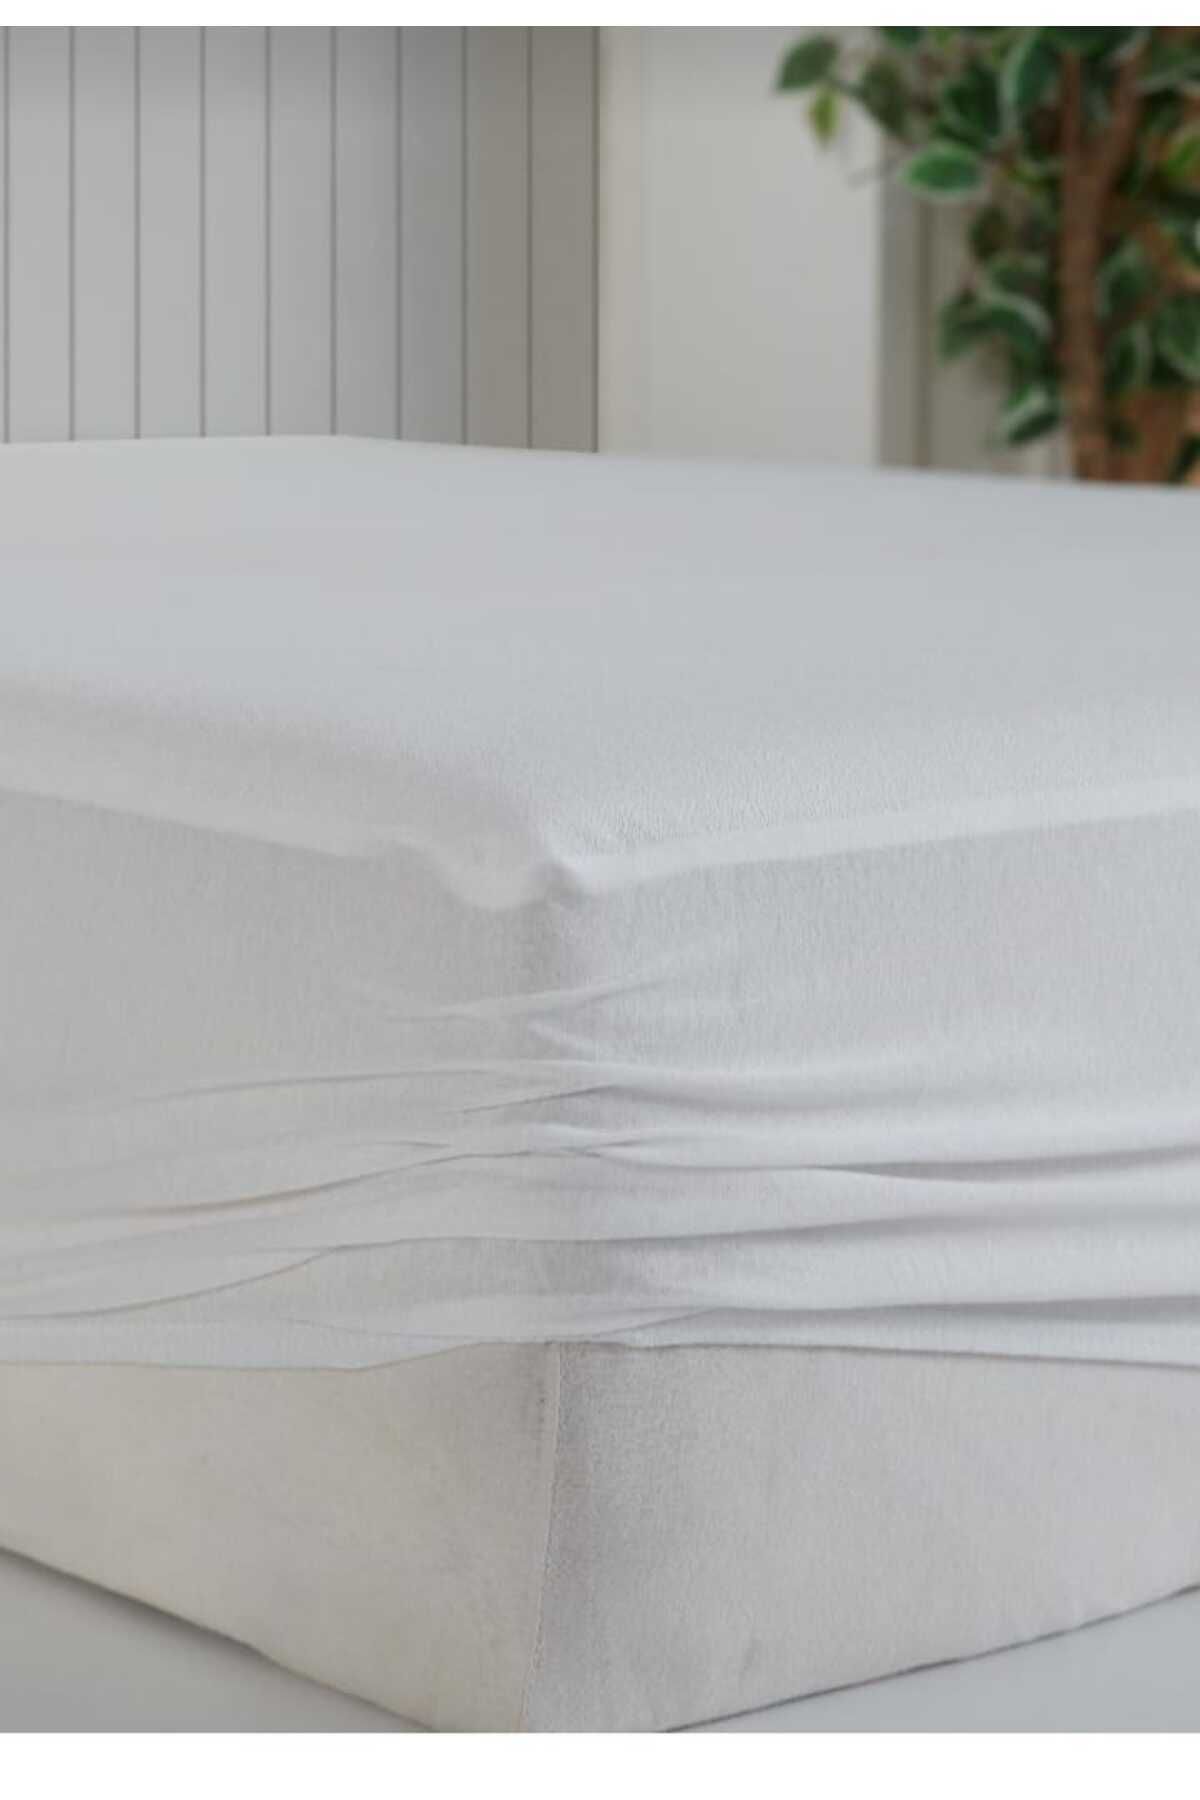 AYHOME 160 X 200 Cm Çift Kişilik Fitedd Sıvı Geçirmez Yatak Alezi Yatak Koruyucu Çarşaf Beyaz Renk